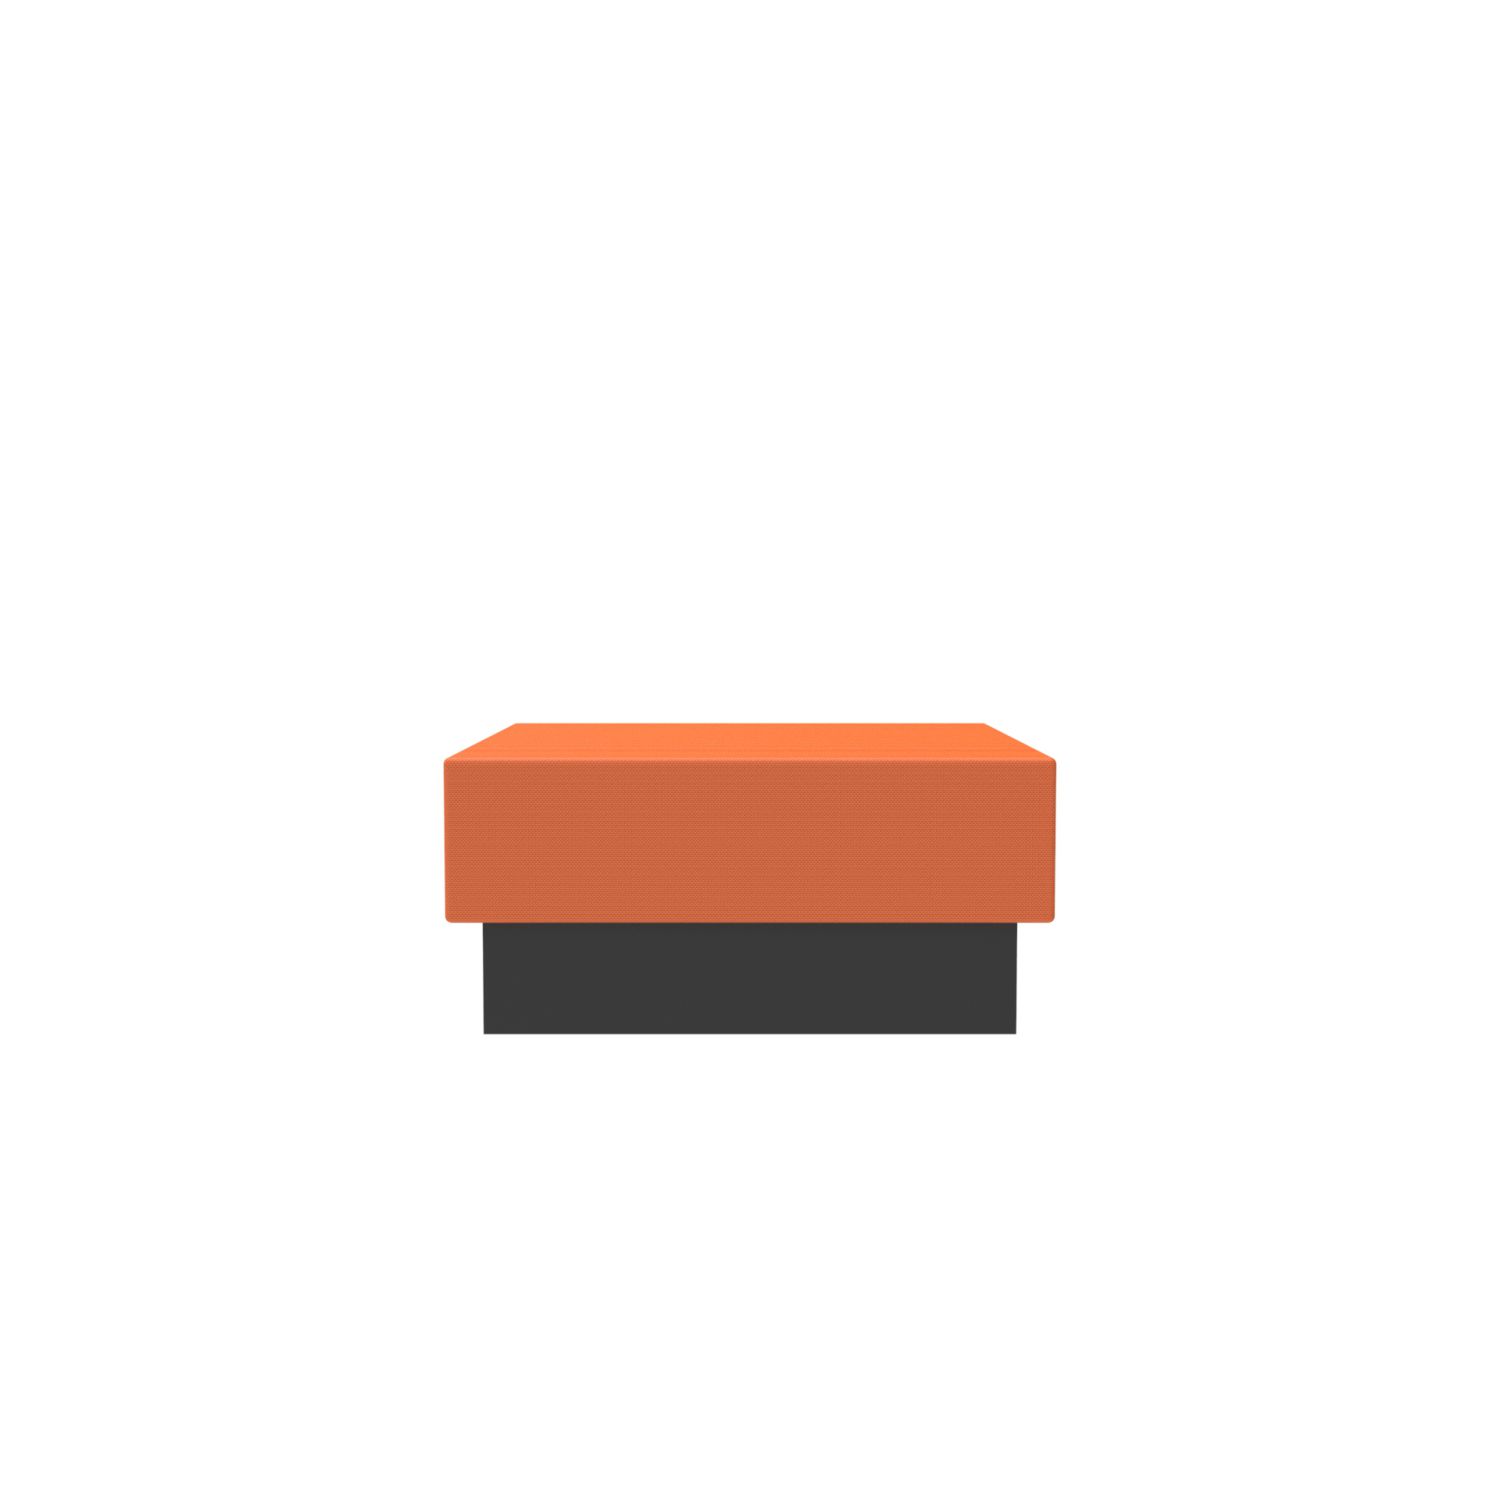 lensvelt oma blocks lounging edition closed base without backrest 90 cm width burn orange 102 black ral9005 hard leg ends